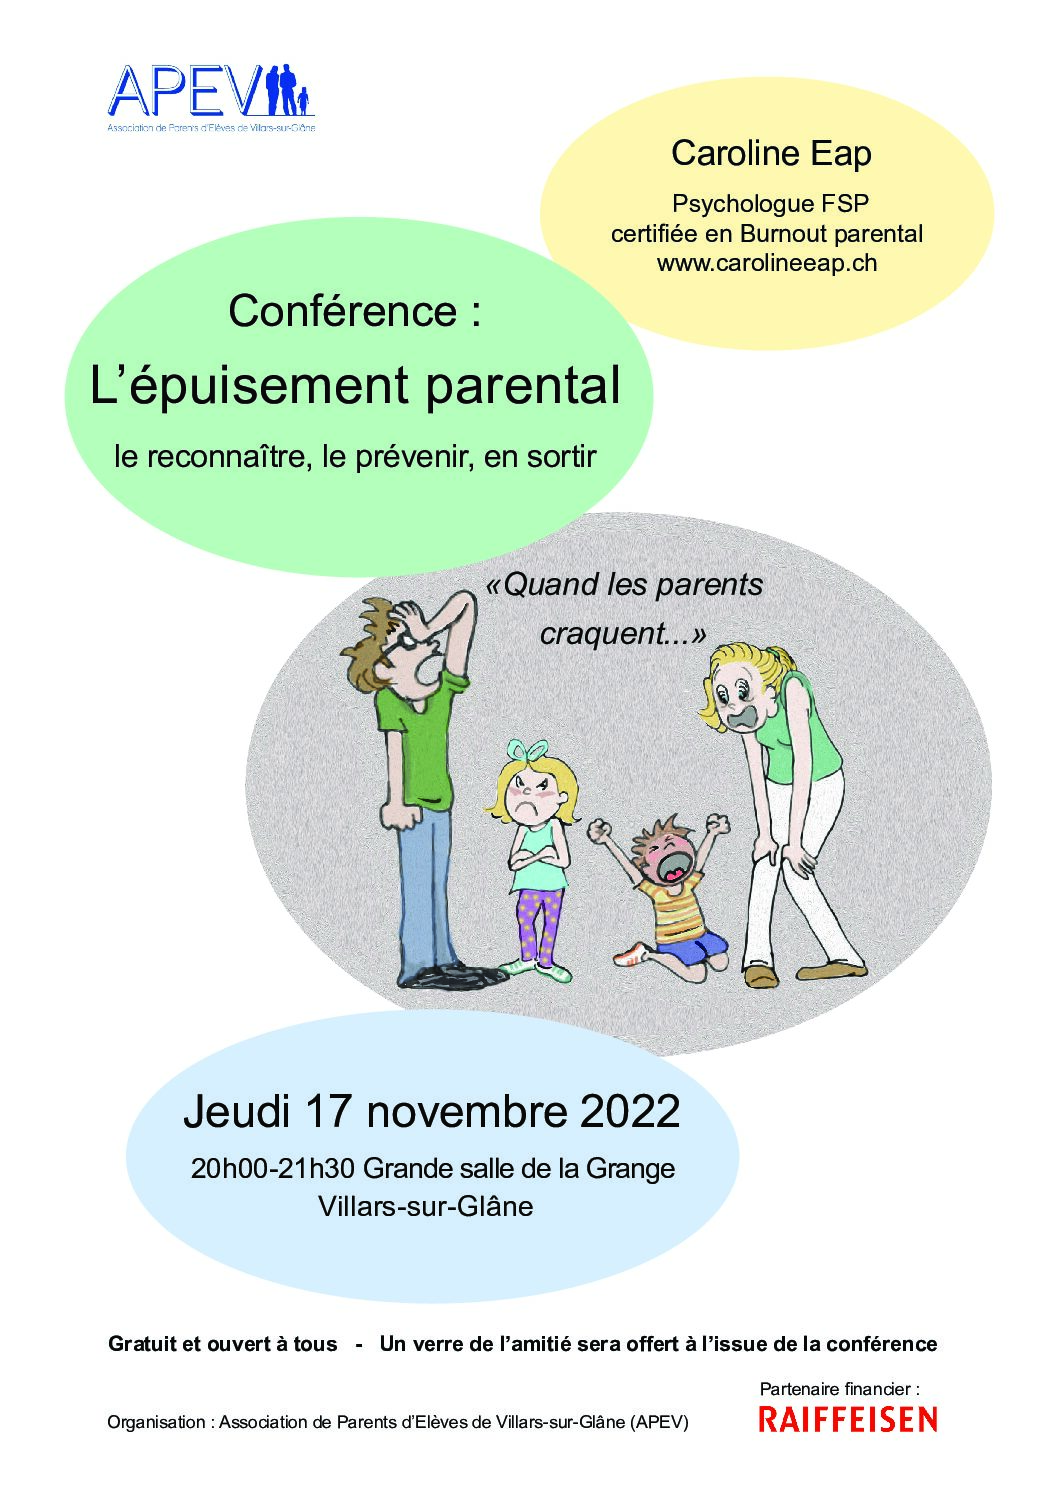 Conférence “L’épuisement parental”